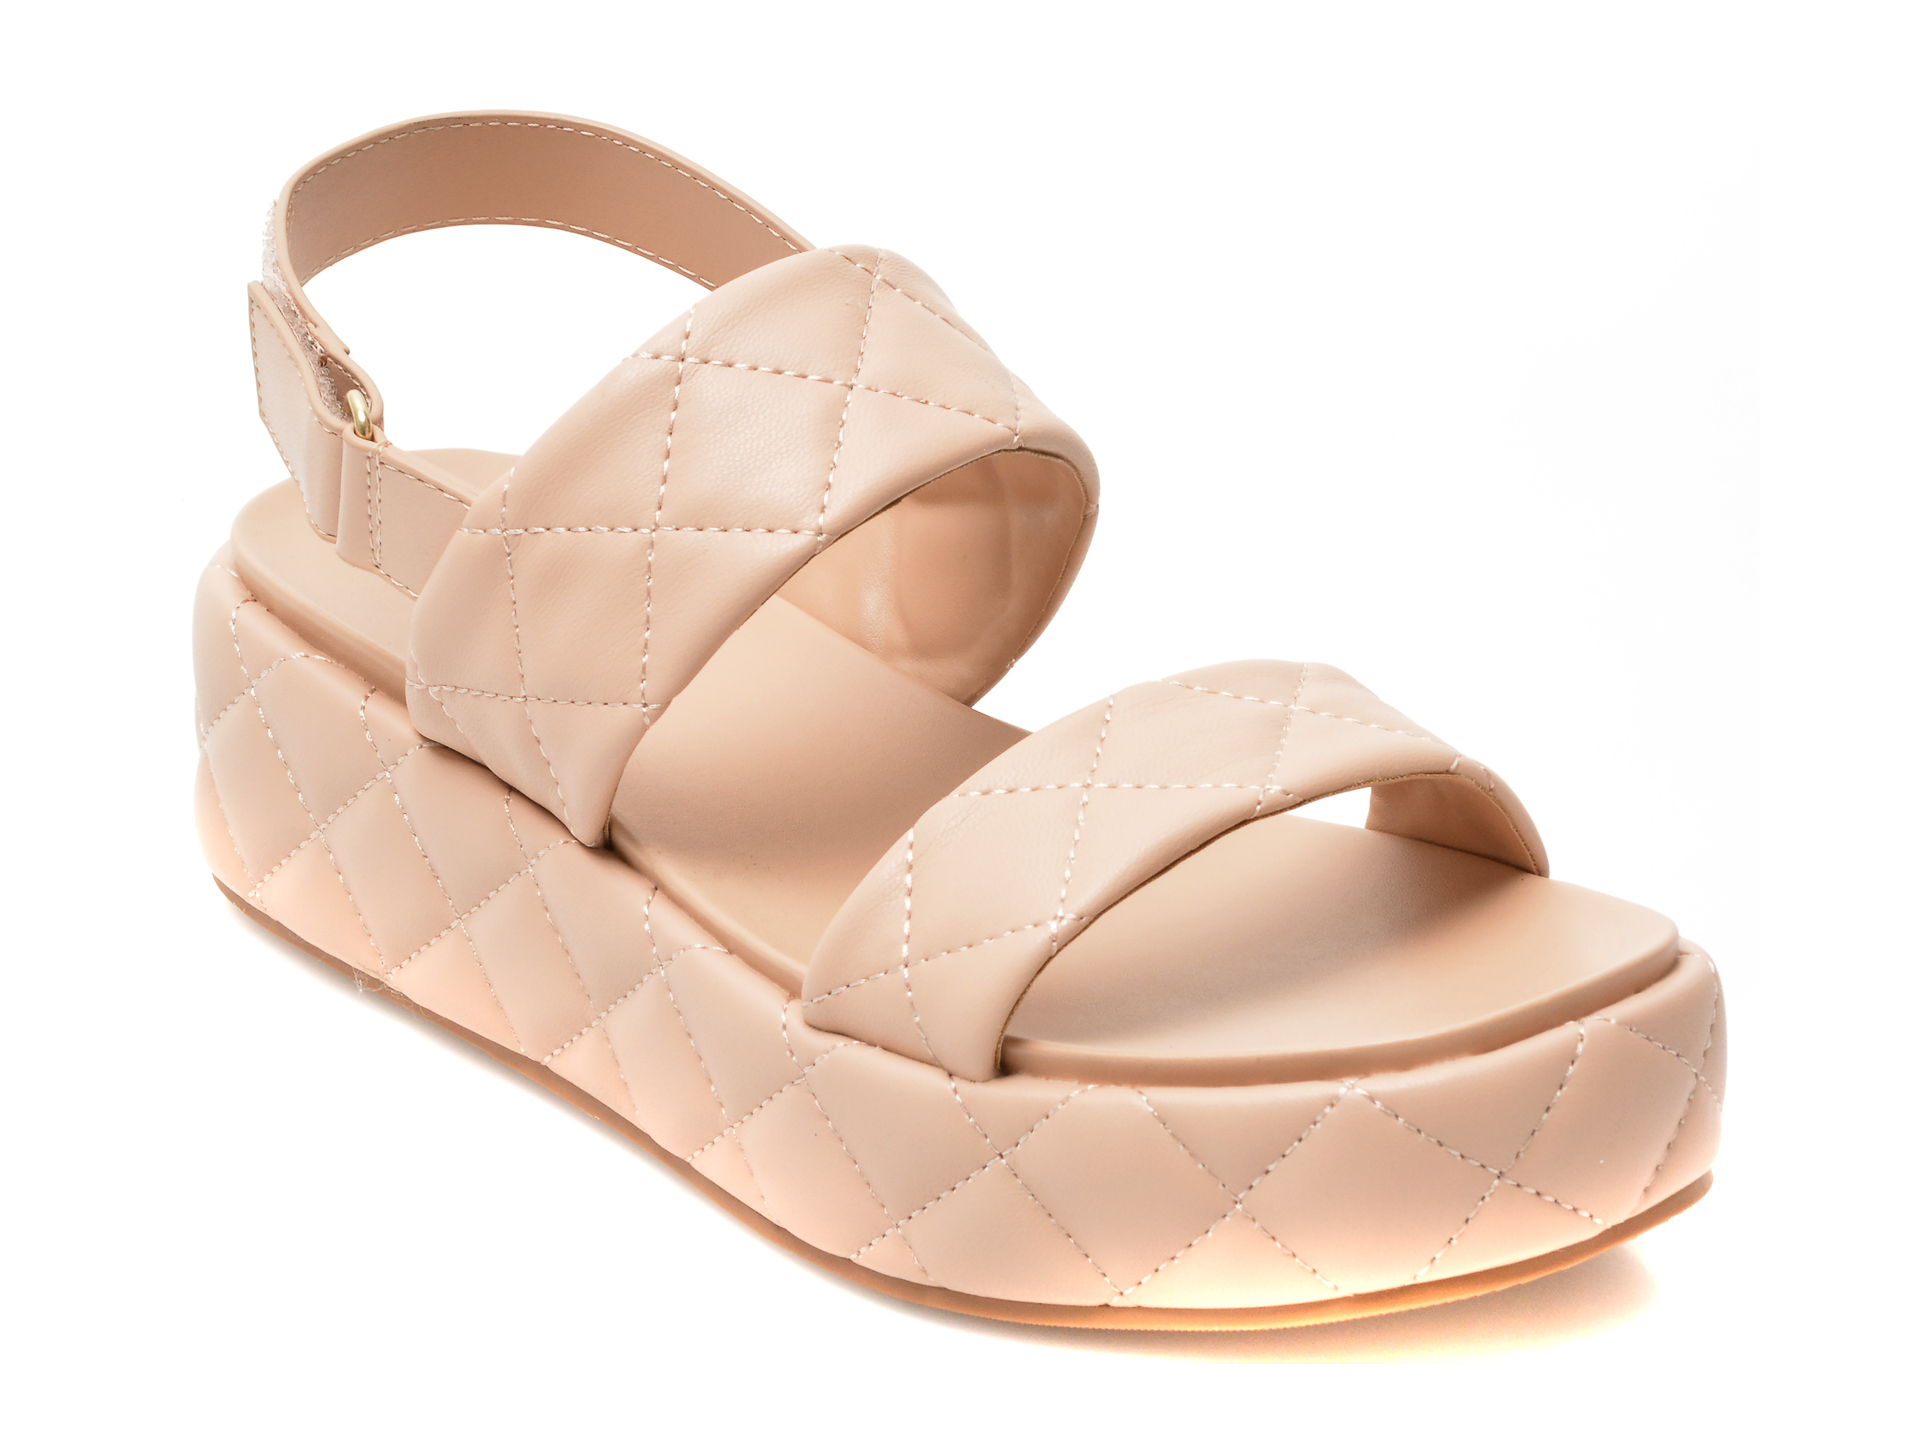 Sandale ALDO nude, COSSETTE270, din piele ecologica